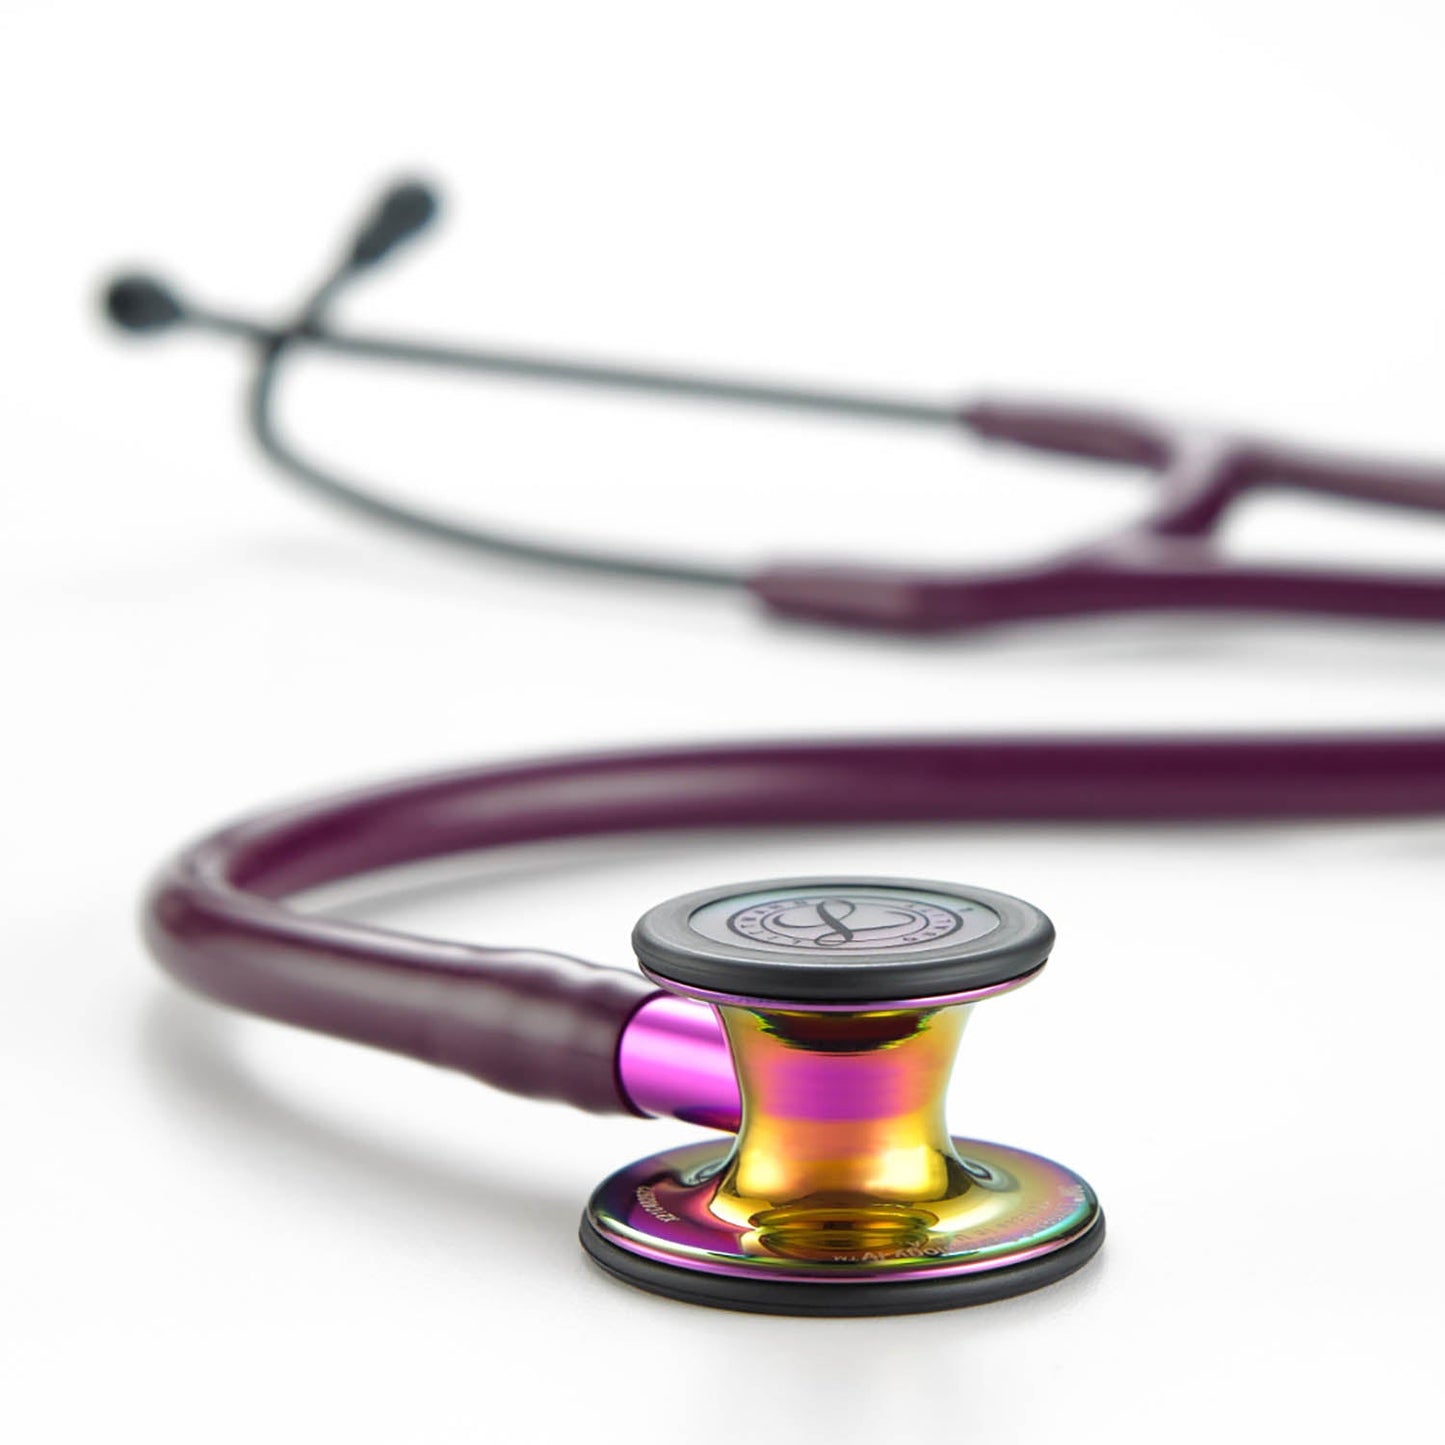 3M™ Littmann® Cardiology IV™ Stethoskop, hochglänzendes, 6239, regenbogenfarbenes Bruststück, pflaumefarbener Schlauch, violetter Schlauchanschluss und schwarzer Ohrbügel